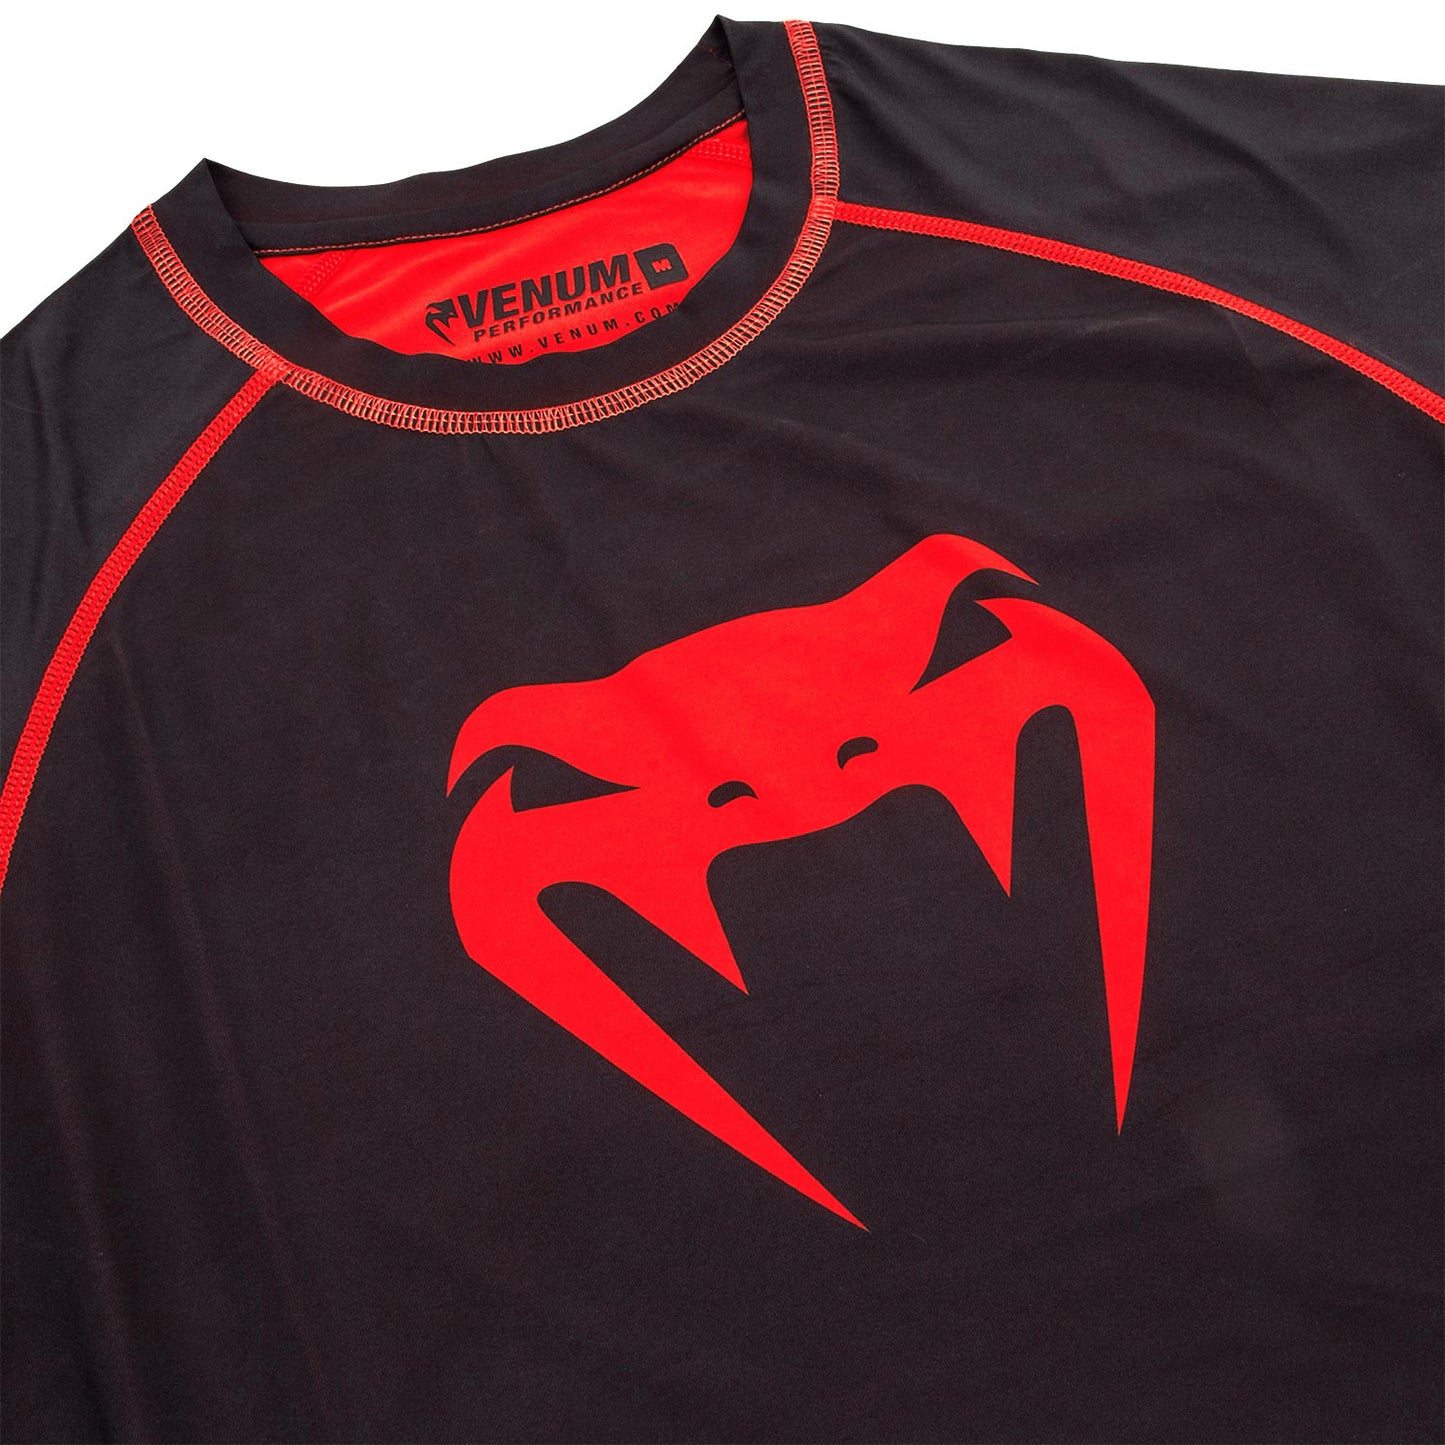 Camiseta de Compresión Venum Contender 3.0  - Mangas Largas - Negro/Rojo